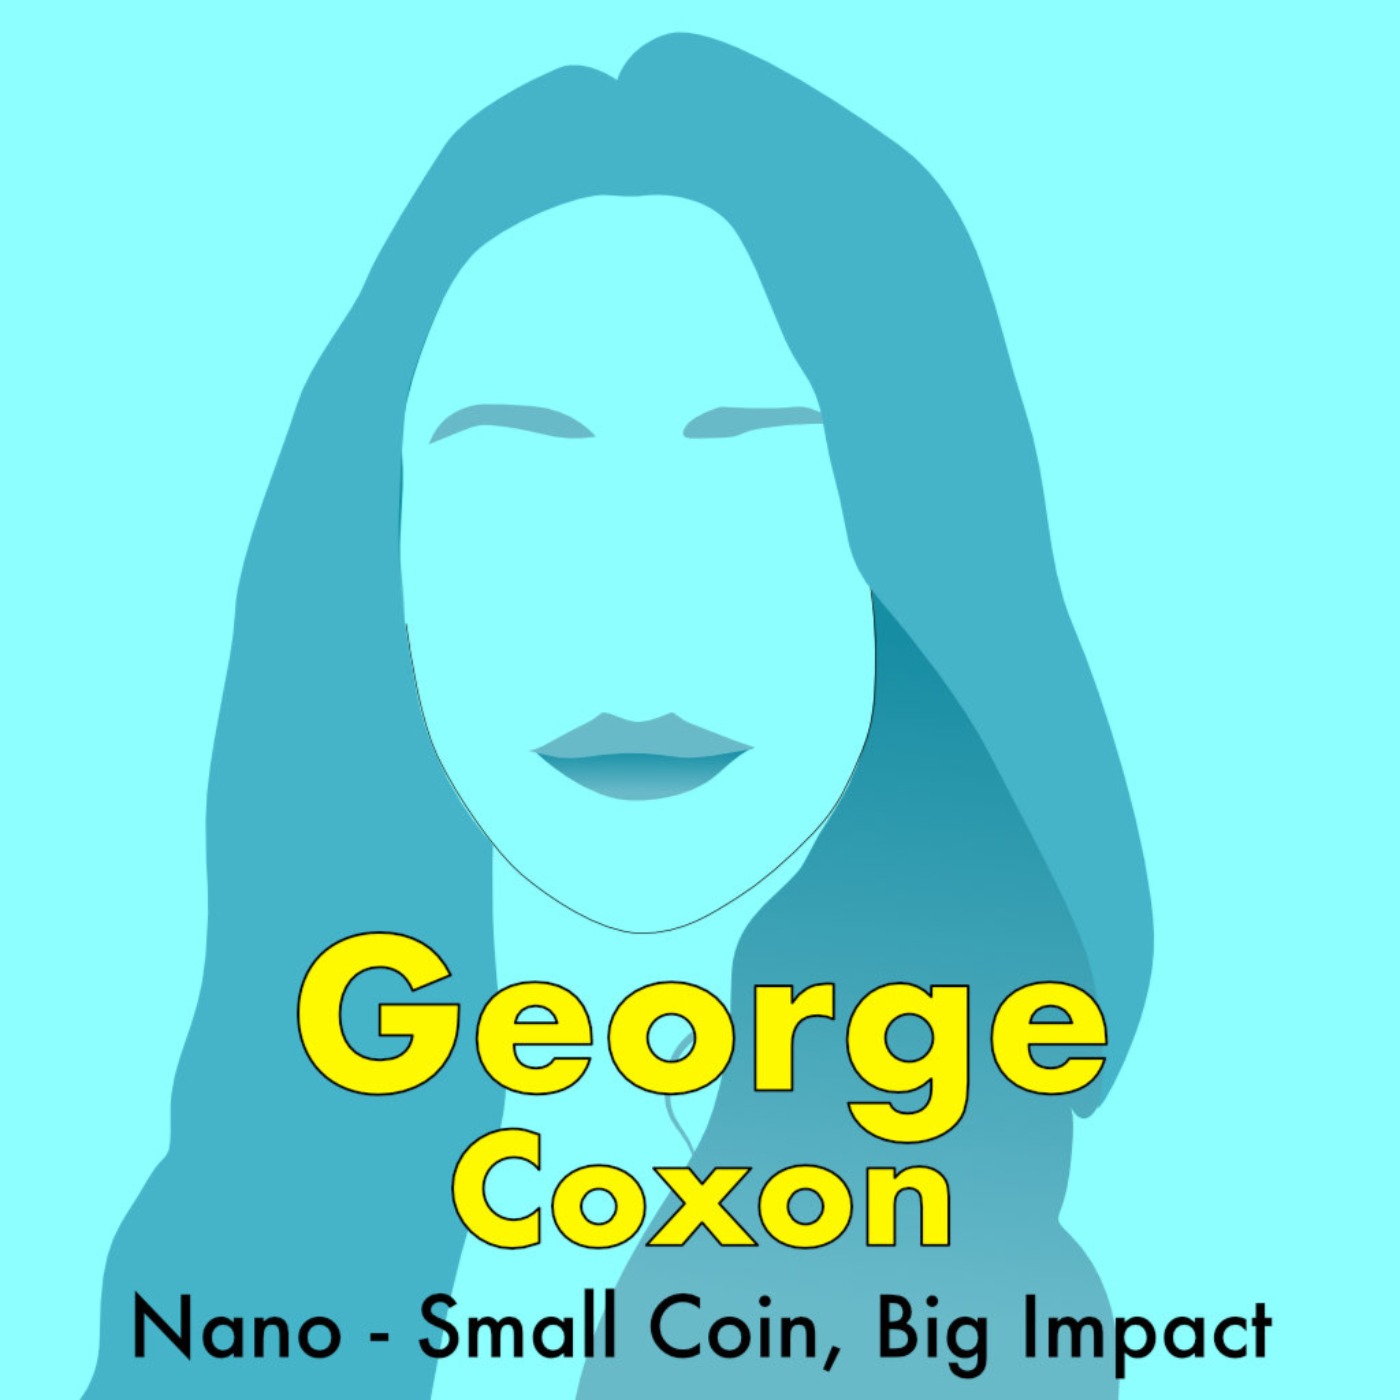 Episode 24 - Nano - Small Coin, Big Impact with George Coxon